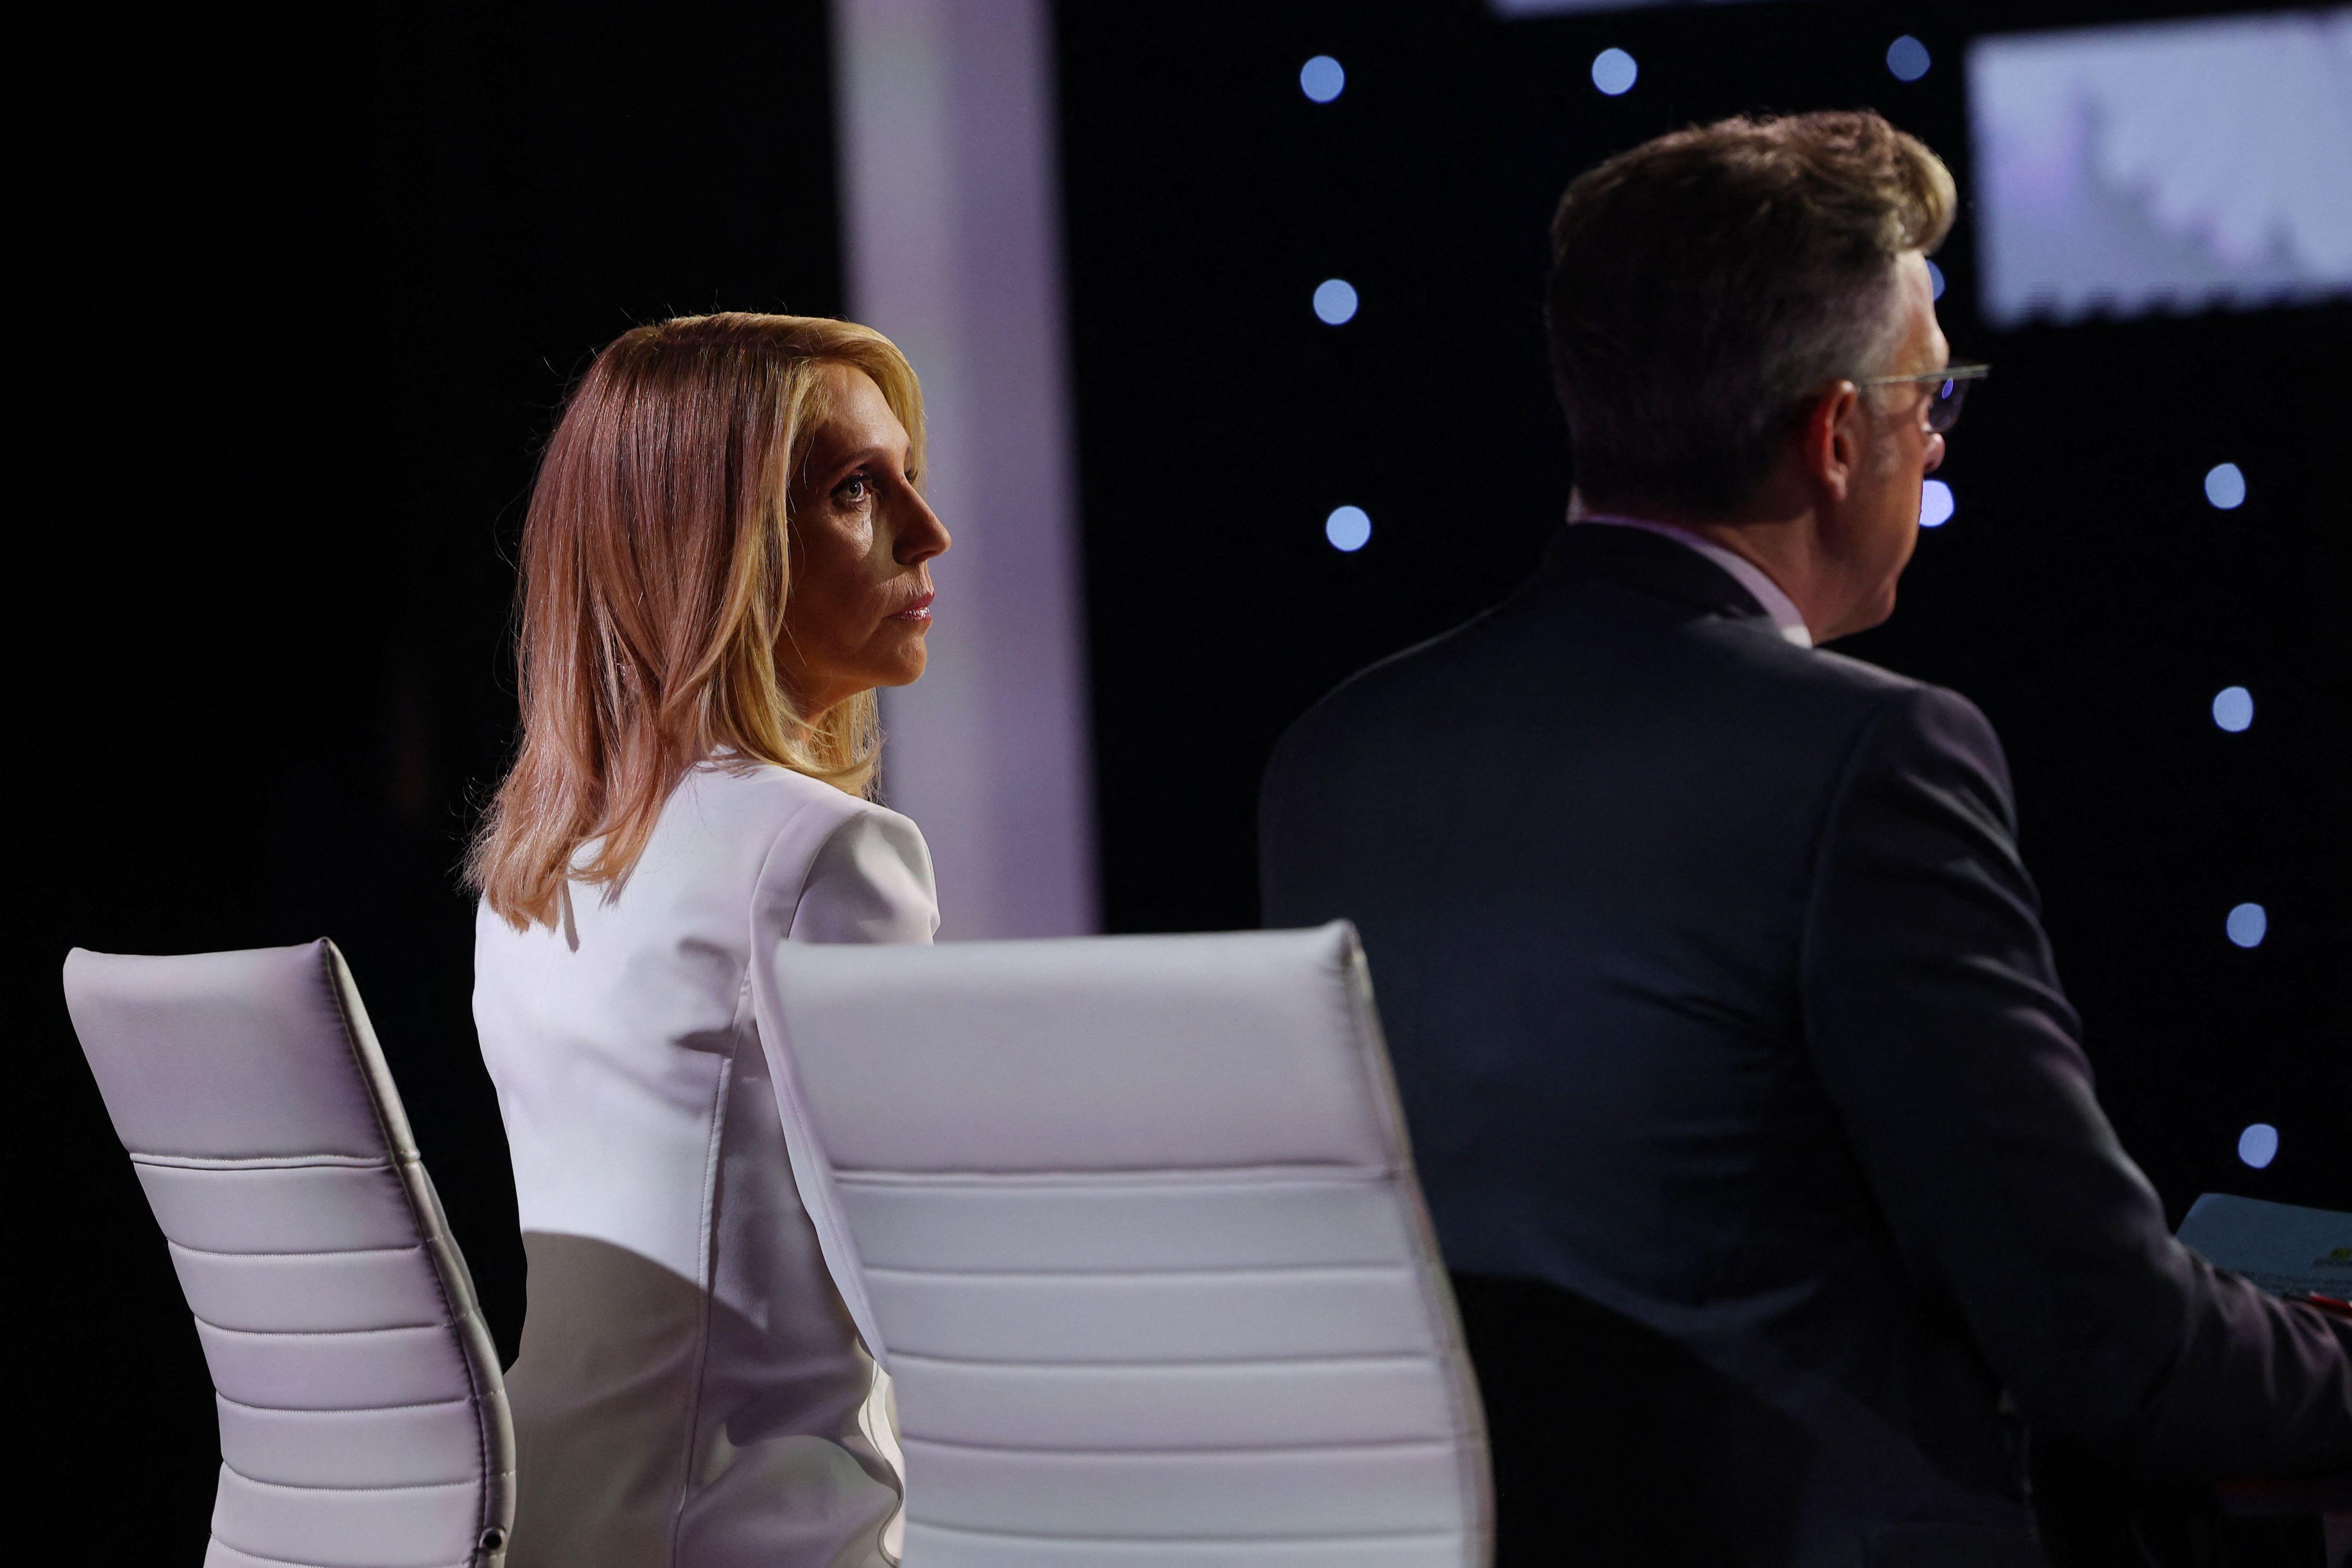 El formato del debate establecido por CNN no permitió a los moderadores ser más incisivos con los candidatos. (REUTERS).